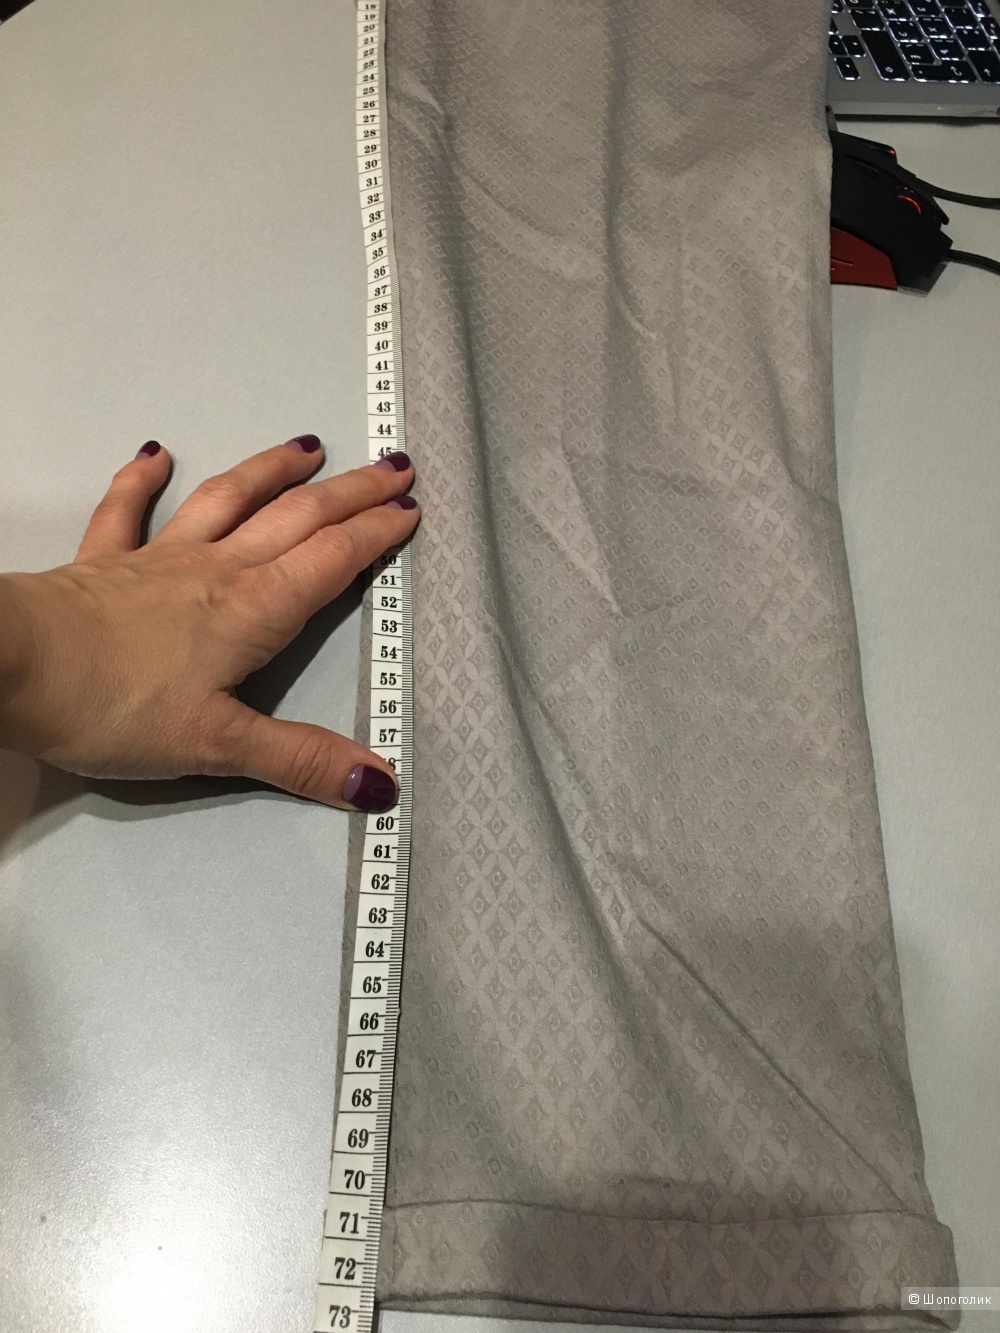 Итальянские брюки ARGONNE из текстурированного хлопка, диз. размер: 44 (IT), на рос. 46